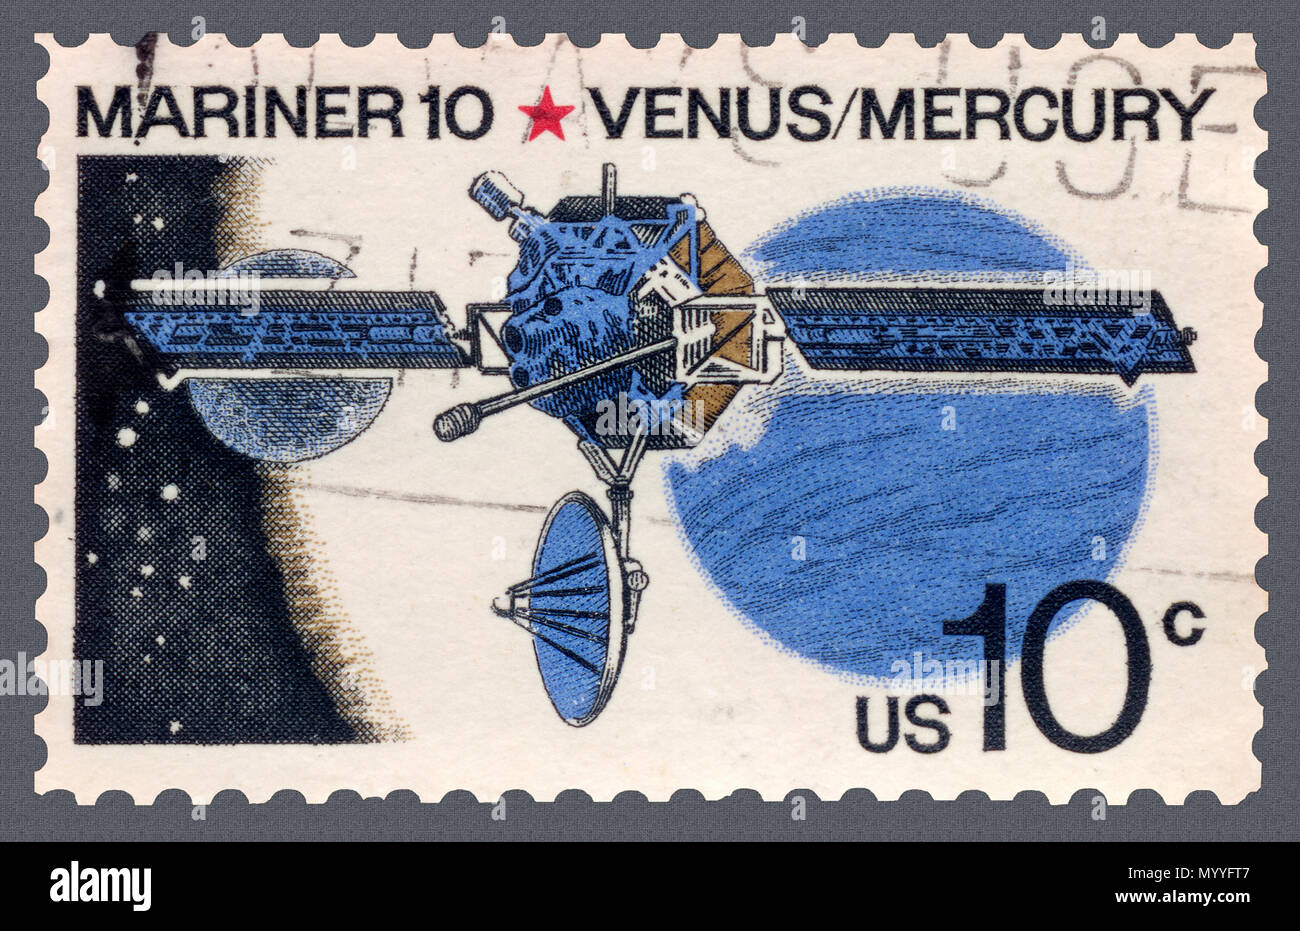 Mariner 10 to Venus and Mercury Postage Stamp Stock Photo